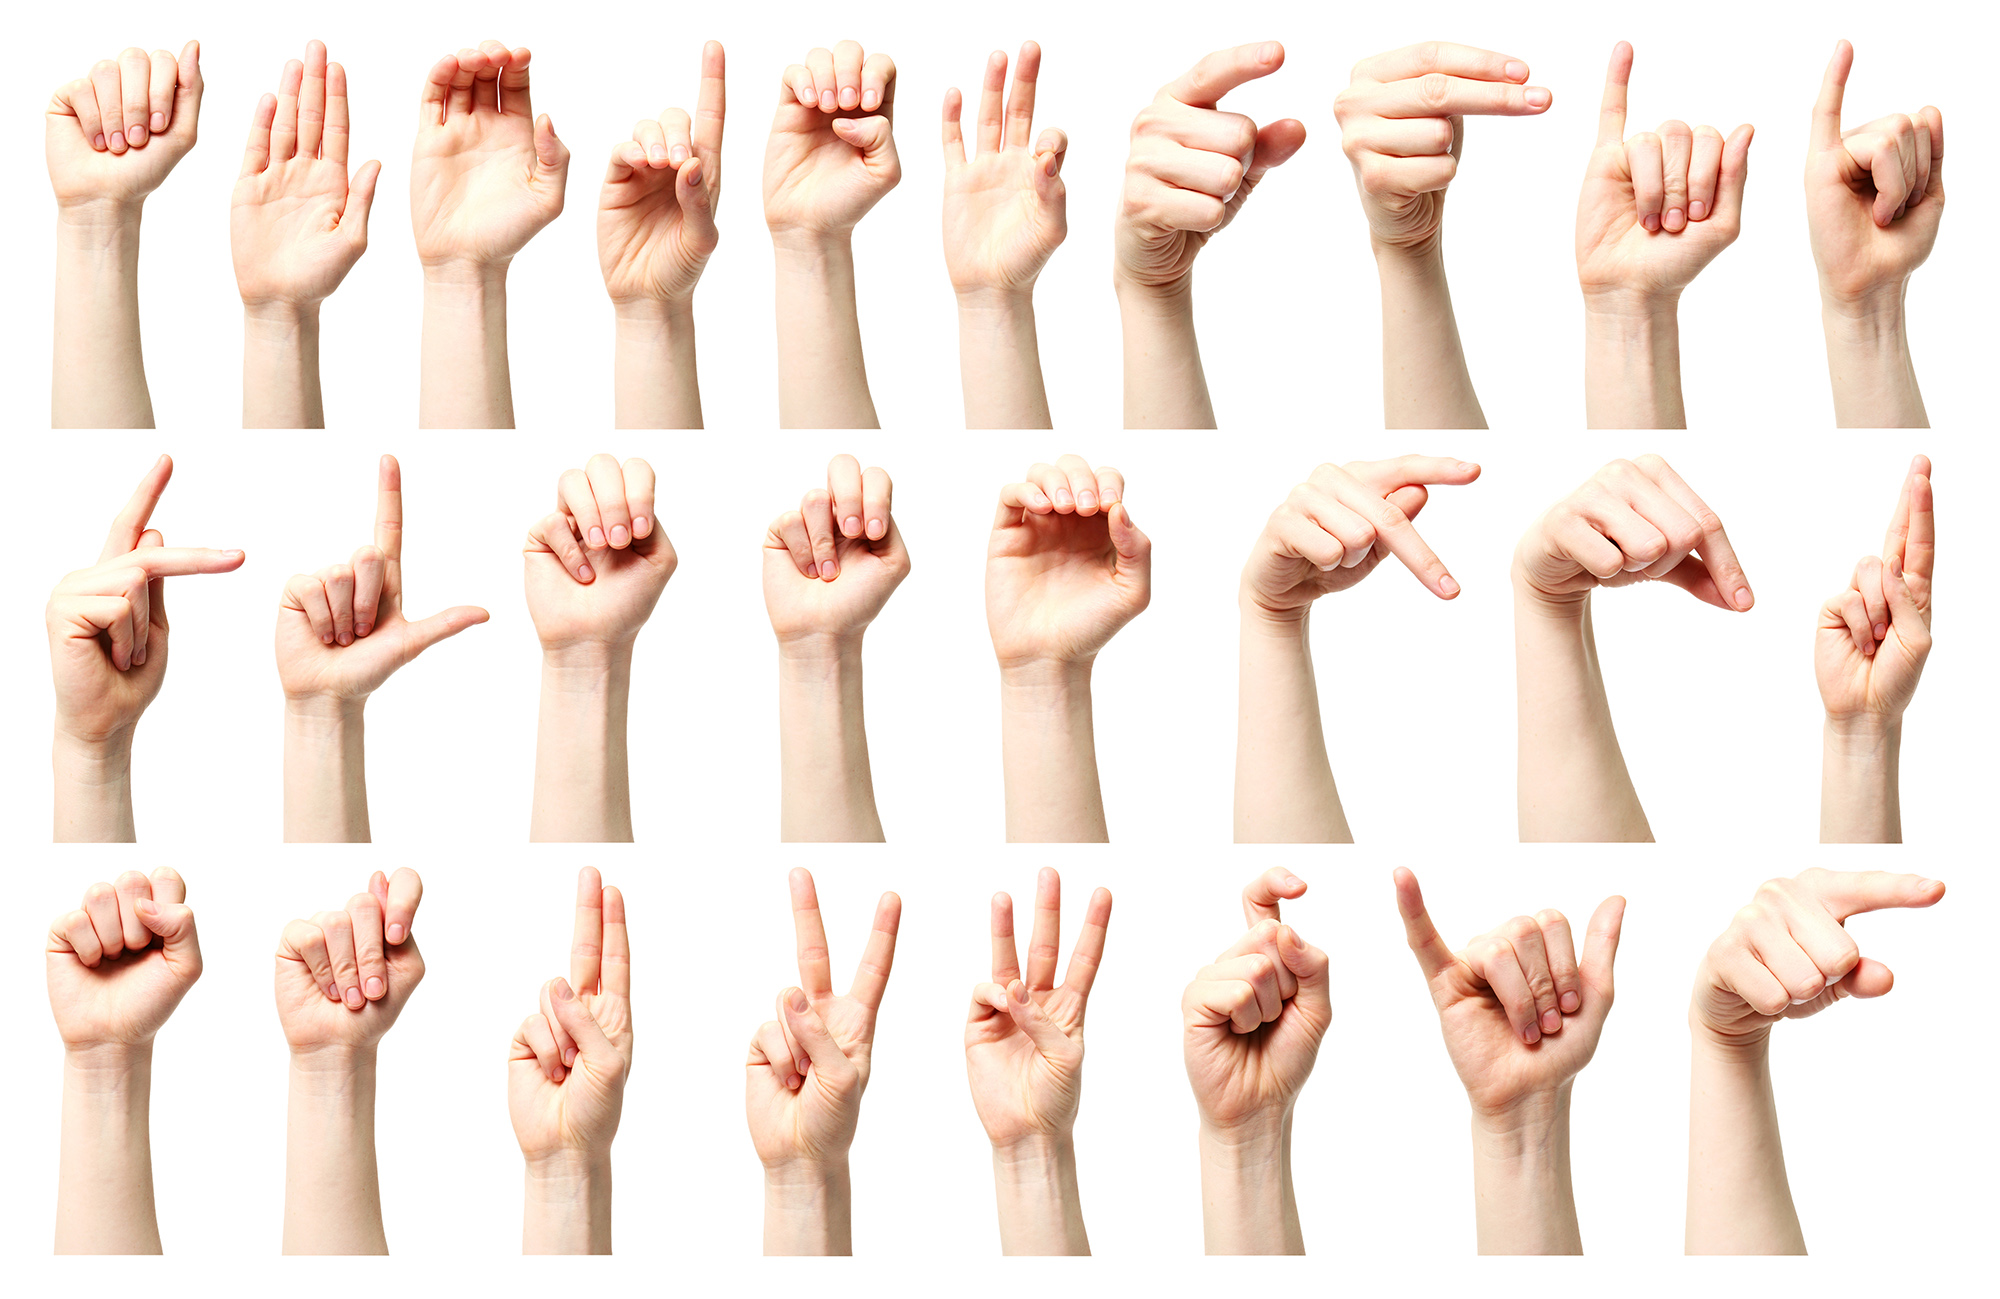 ASL image